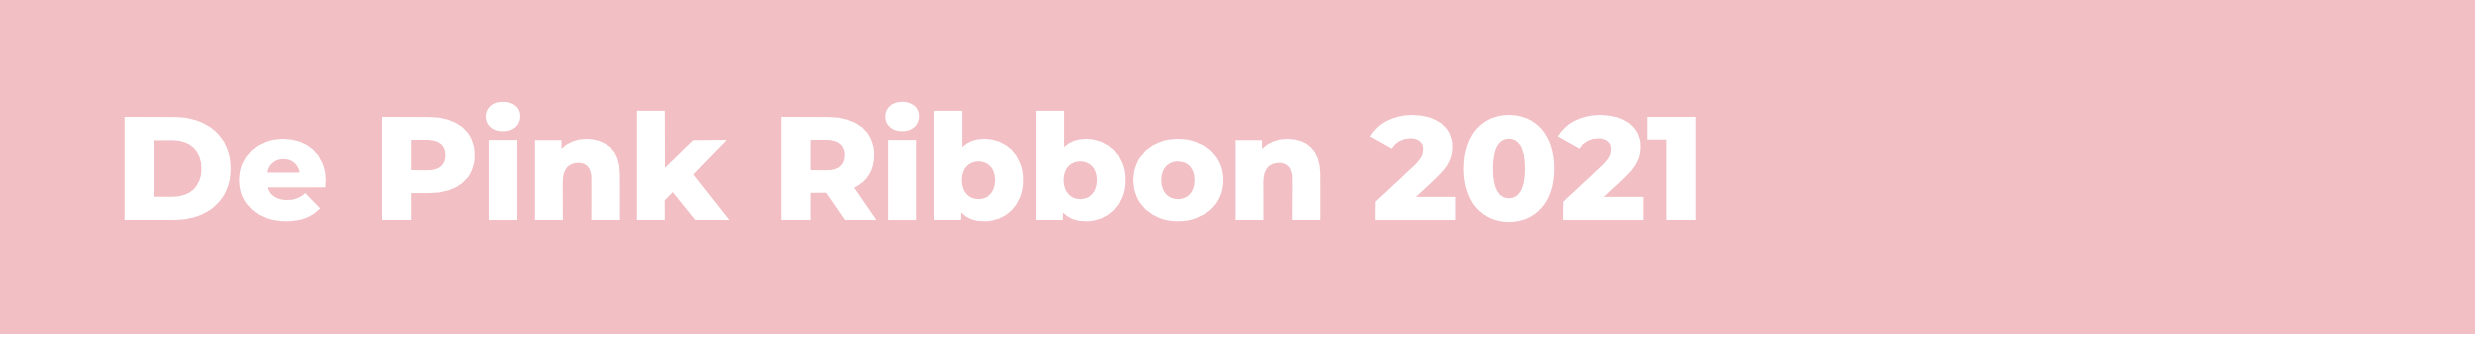 De Pink Ribbon 2021